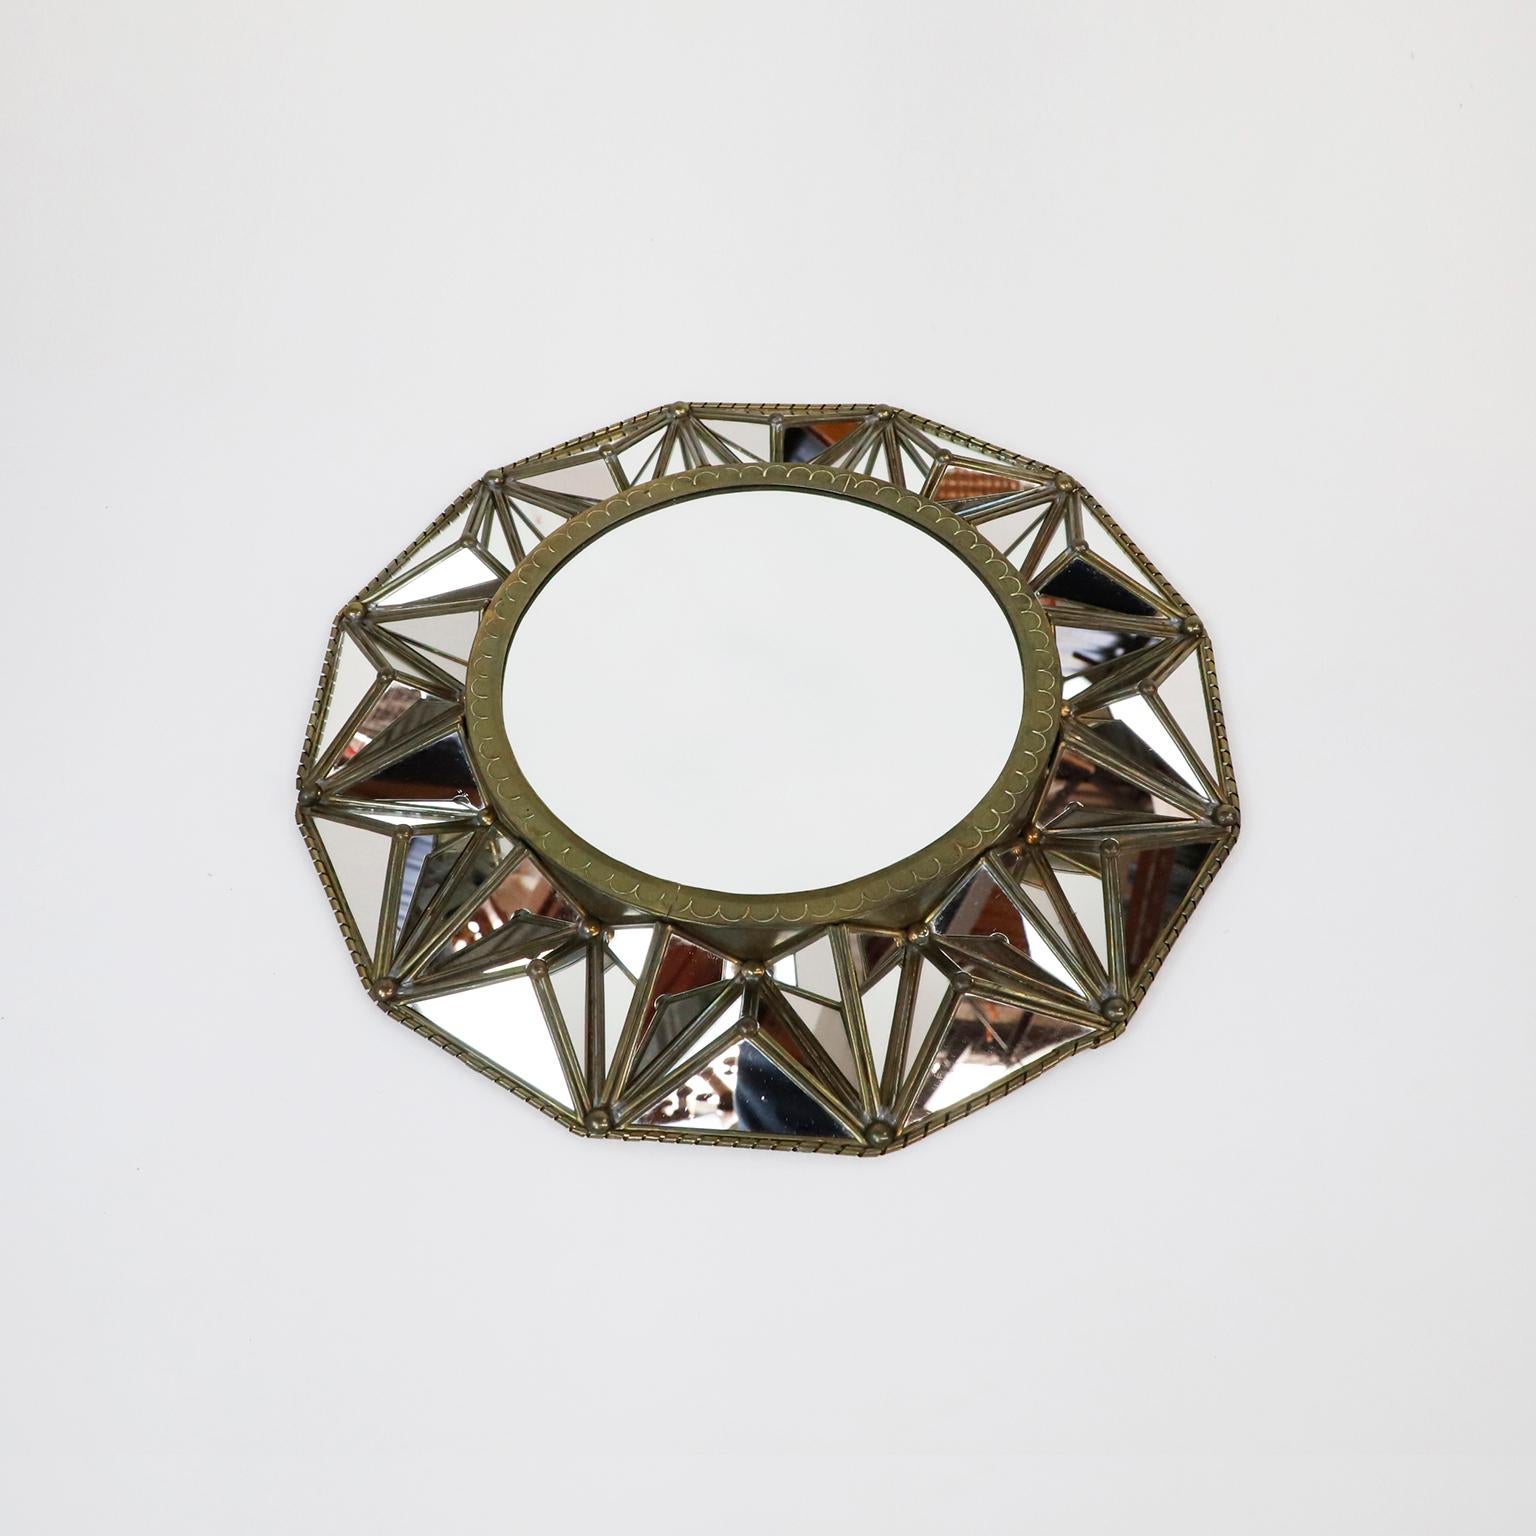 Circa 1950, nous proposons ce grand miroir mexicain artisanal en forme de rayon de soleil. Fabriquée en acier, avec des détails de cuvette et une patine fantastique.